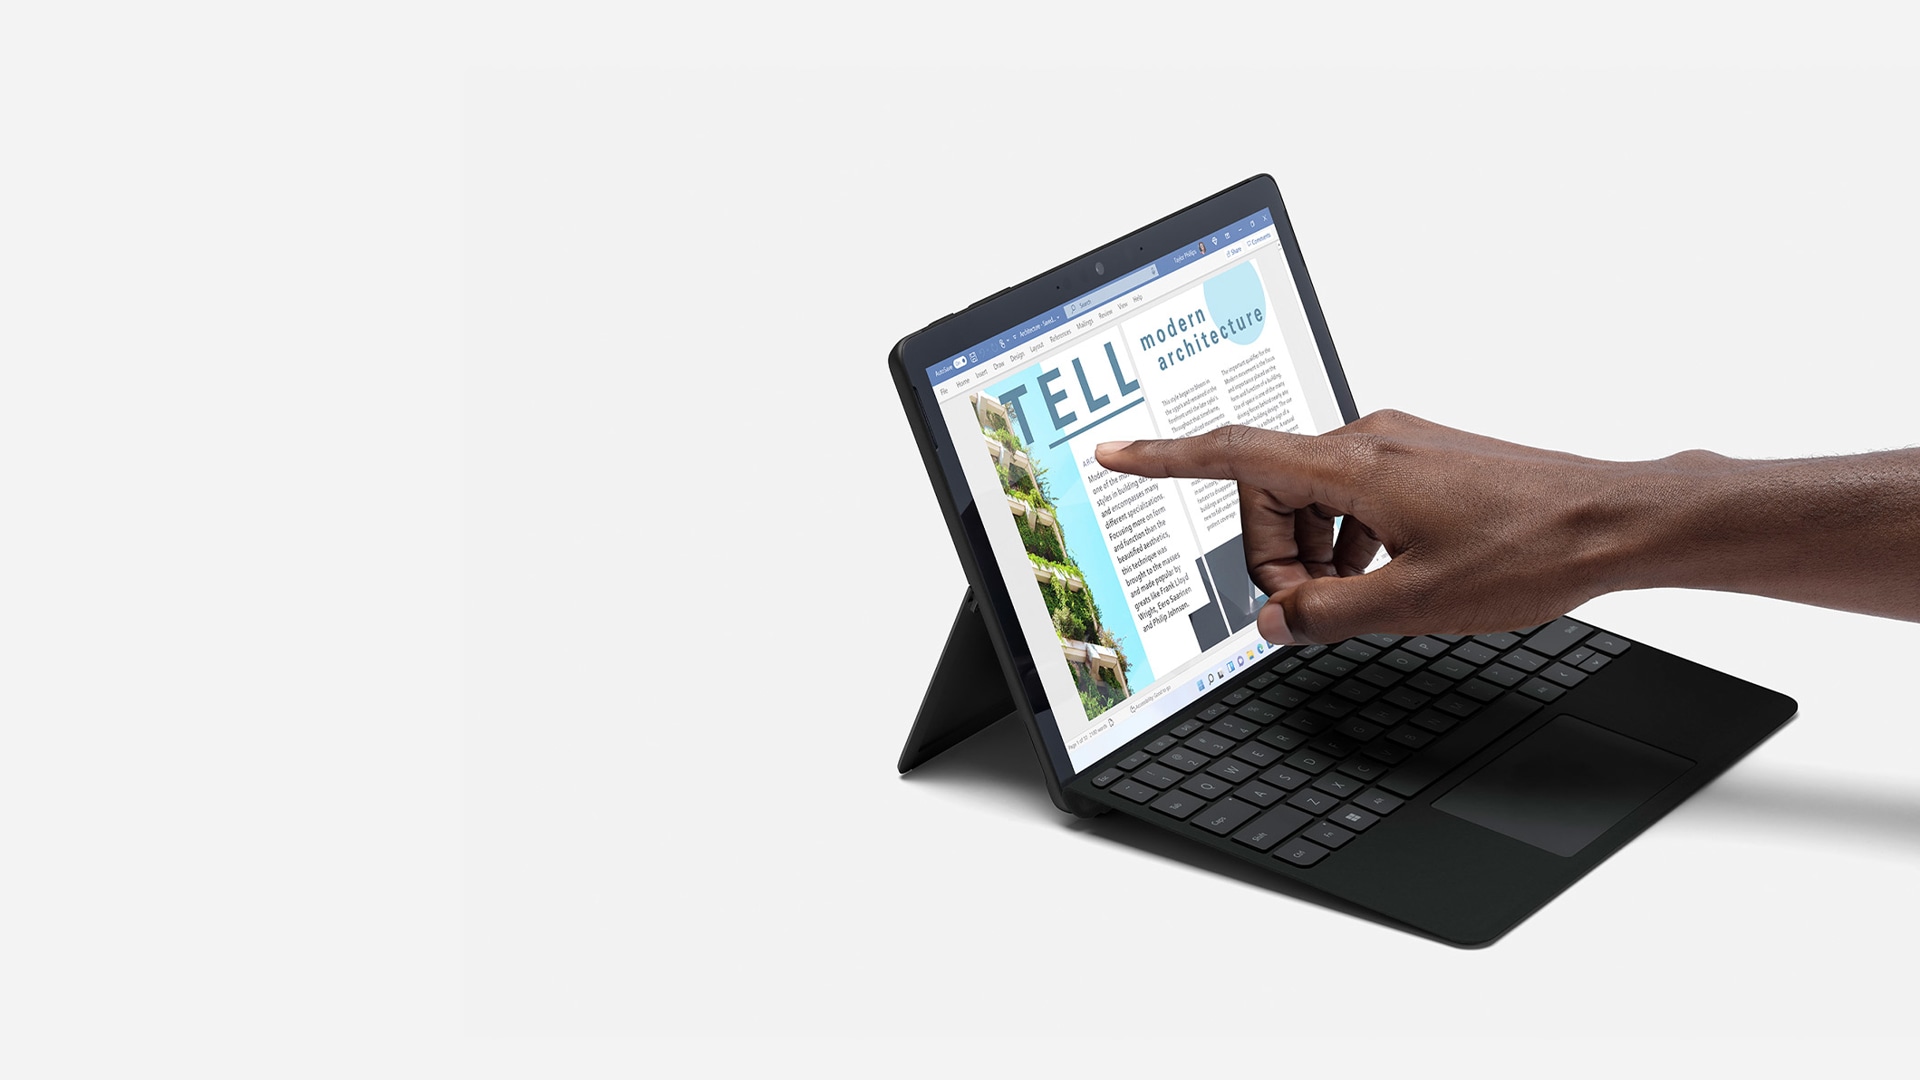 Surface Go 3 sedang digunakan sebagai komputer riba.